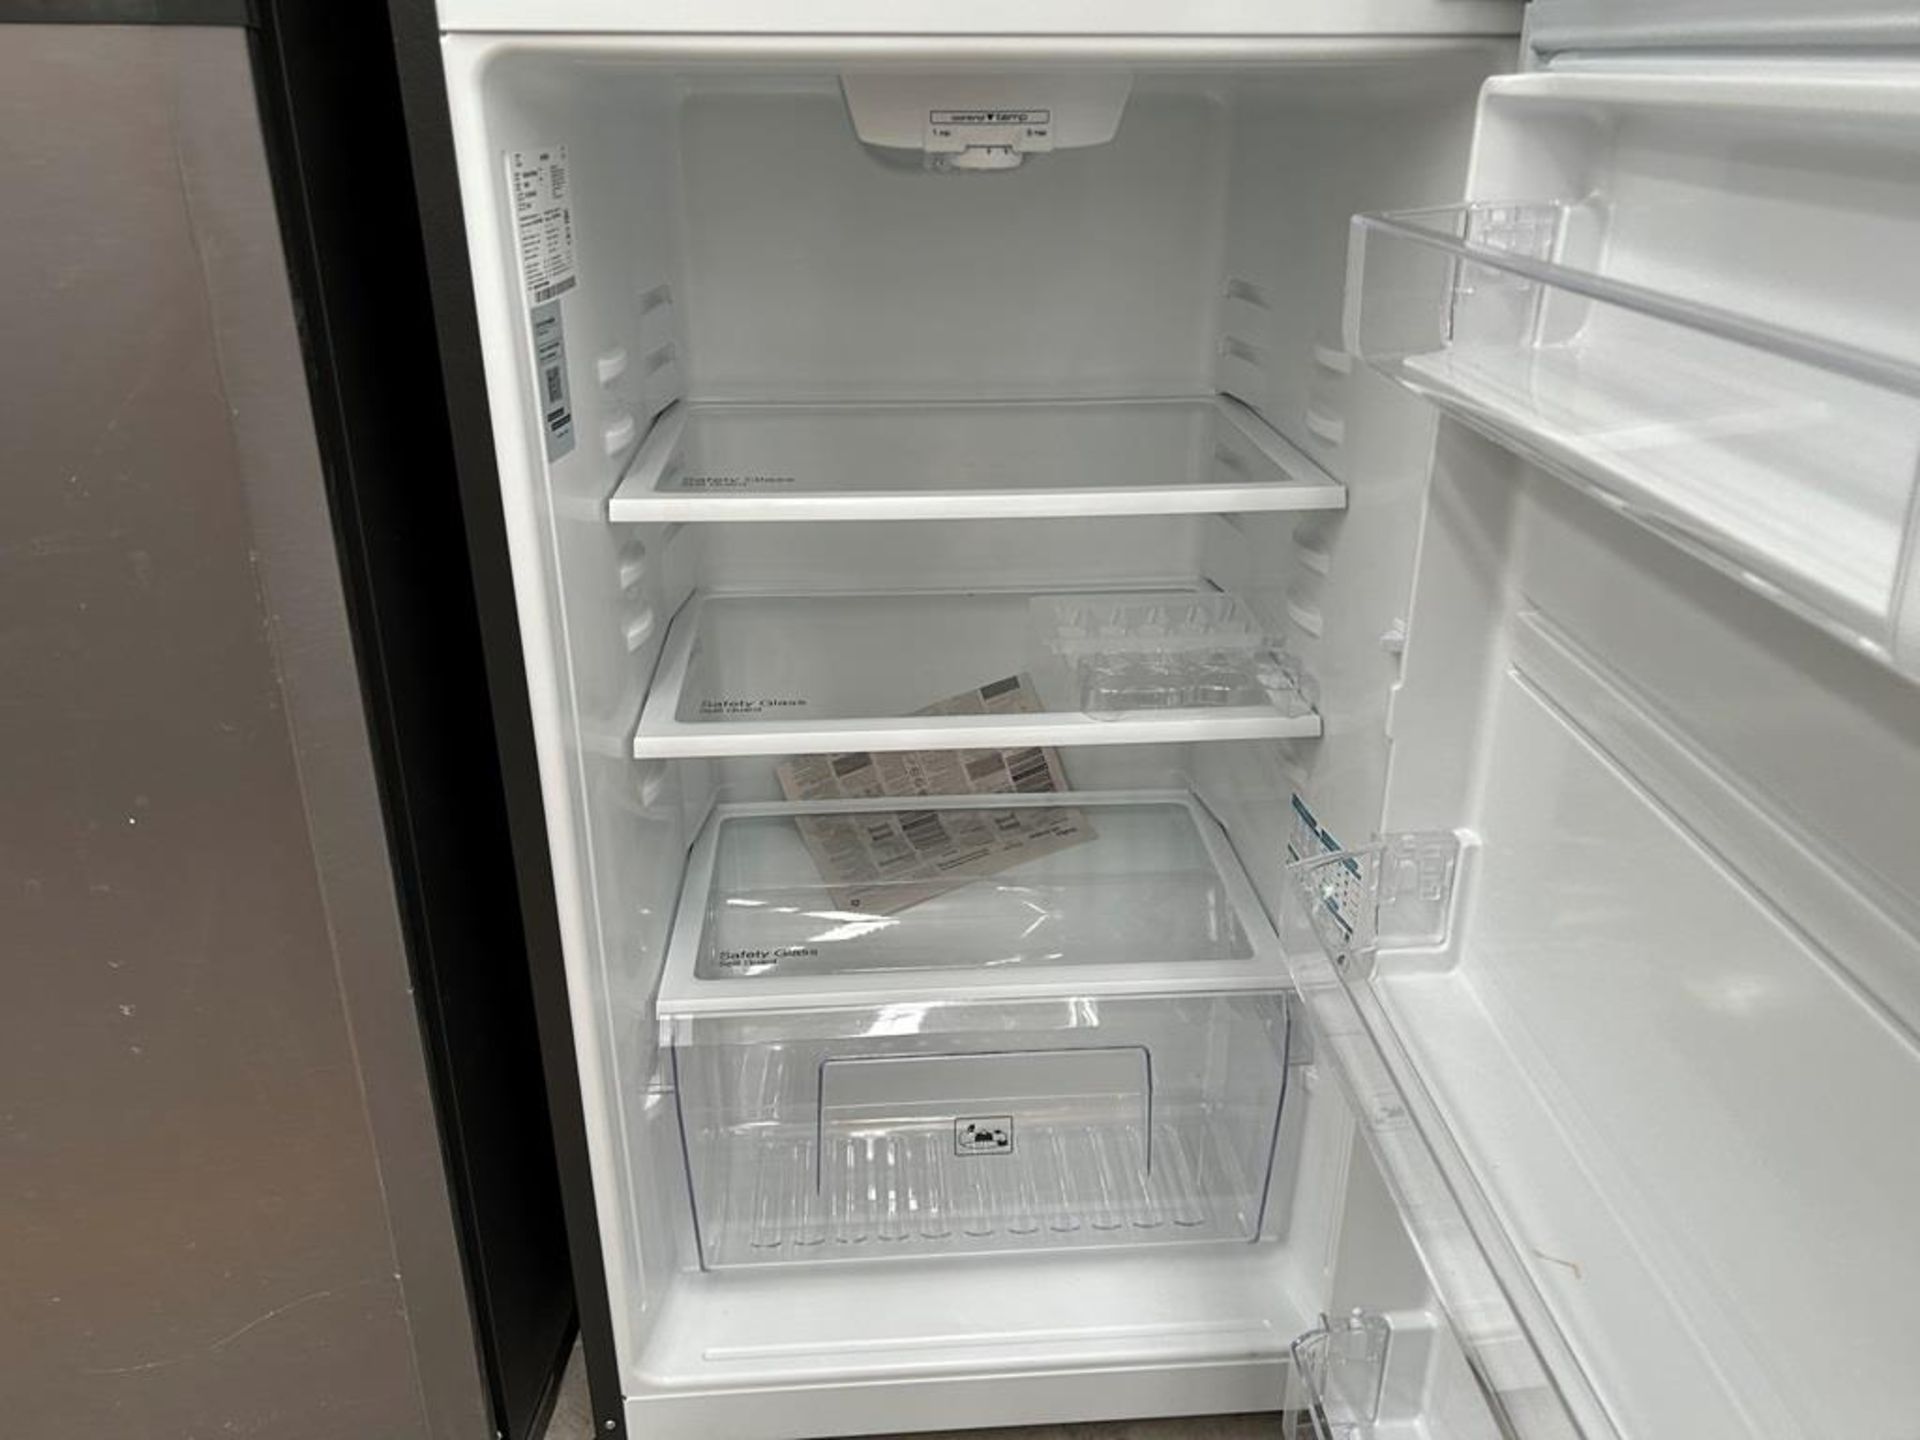 Lote de 2 refrigeradores contiene: 1 Refrigerador Marca MABE, Modelo RME360PVMRM0, Serie 04453, Col - Image 12 of 16